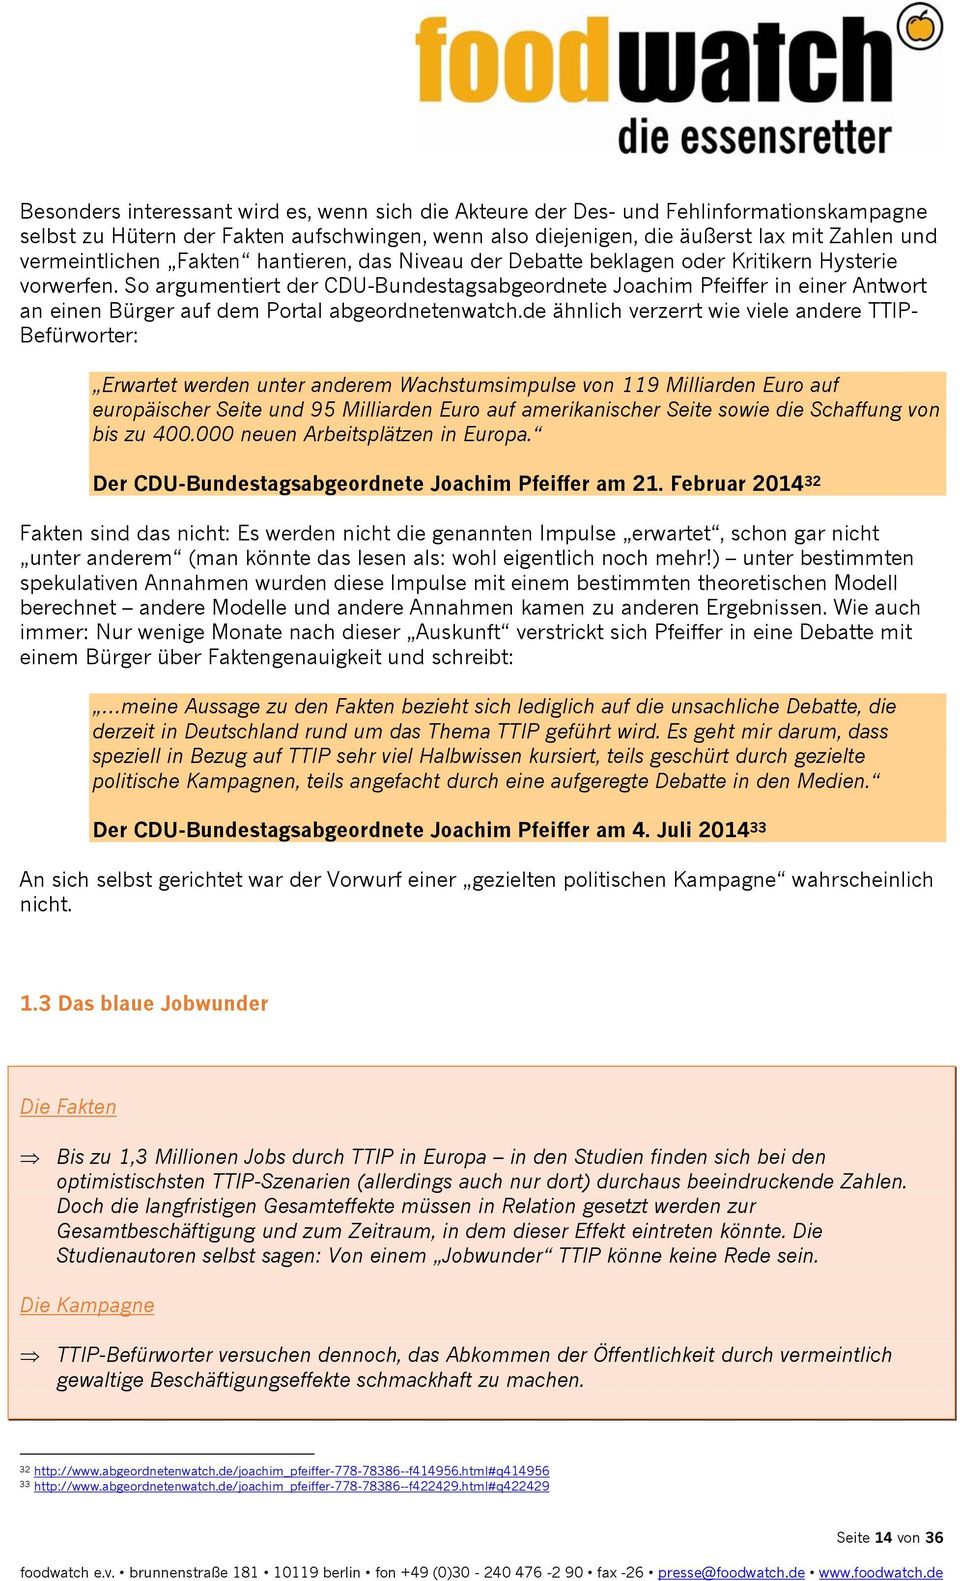 So argumentiert der CDU-Bundestagsabgeordnete Joachim Pfeiffer in einer Antwort an einen Bürger auf dem Portal abgeordnetenwatch.